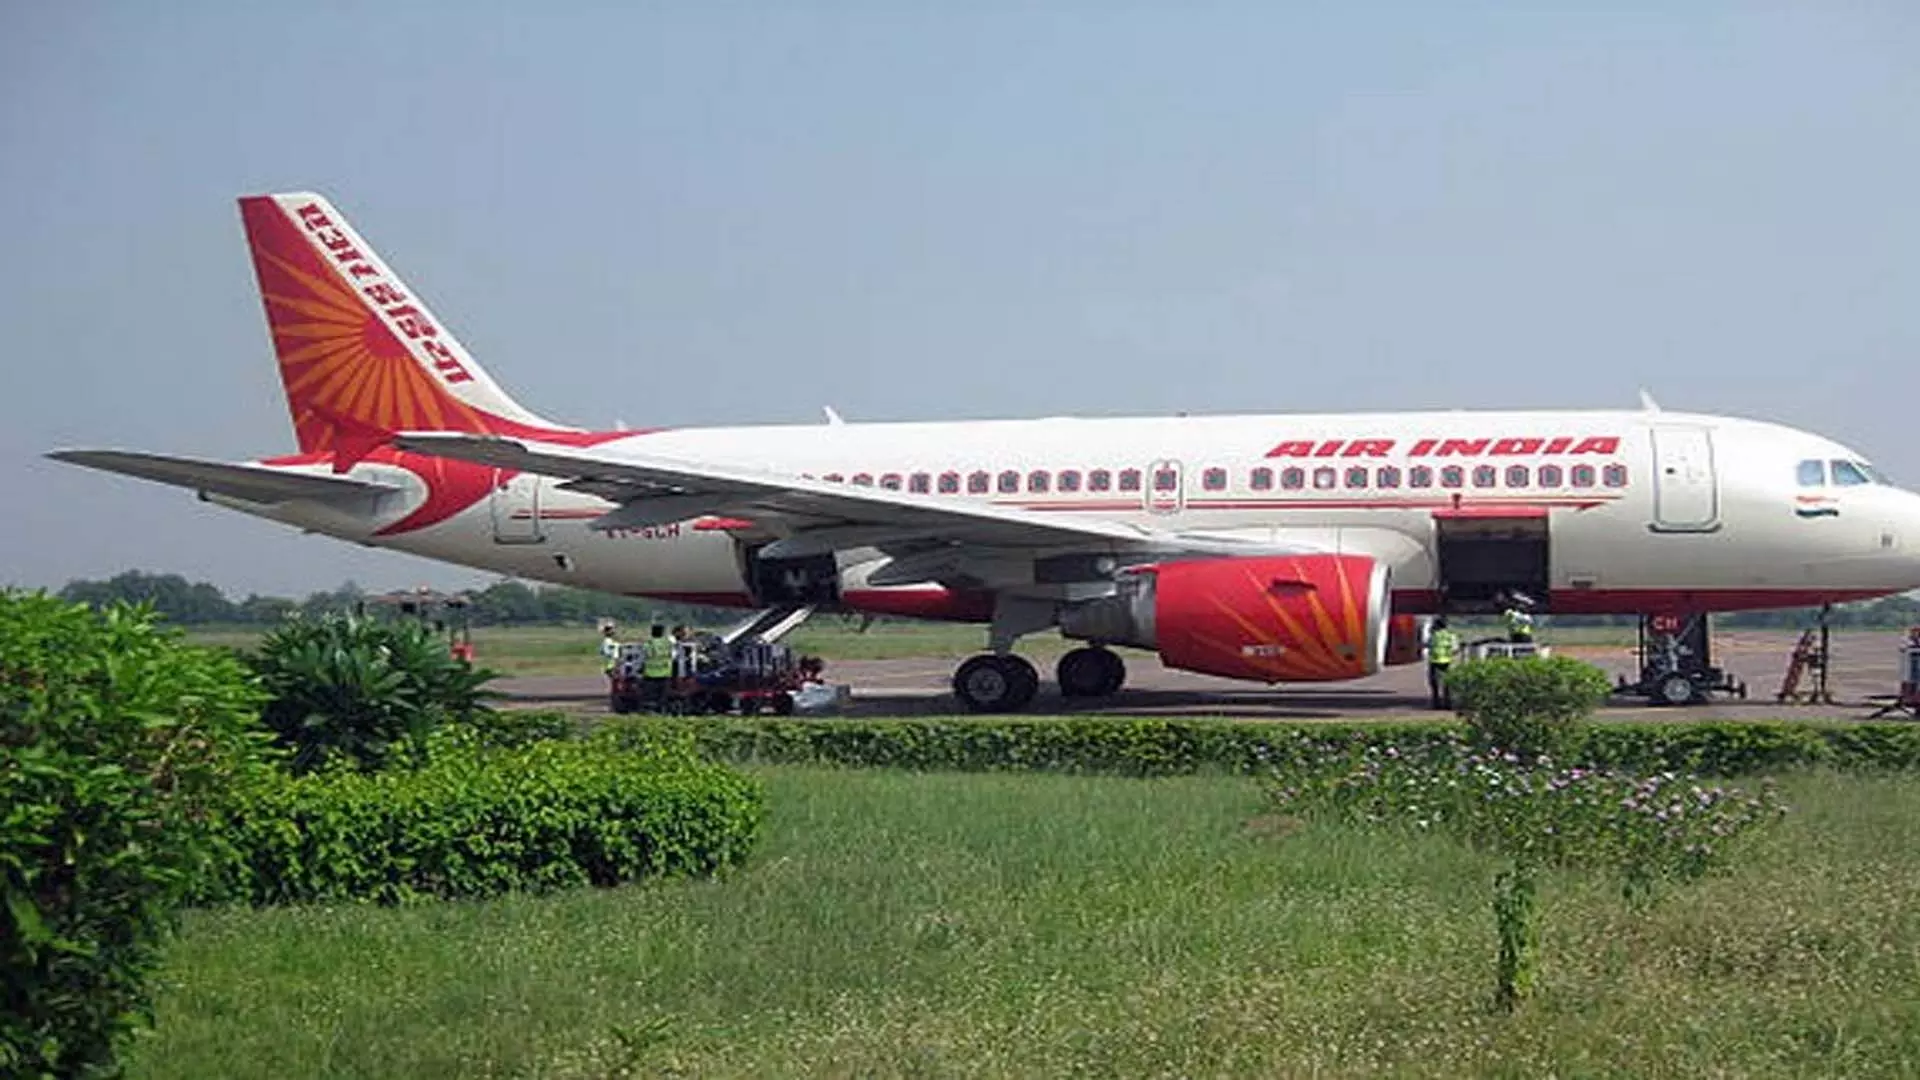 परिचालन संकट के बीच एयर इंडिया एक्सप्रेस यूनियन ने केंद्रीय श्रम आयुक्त से हस्तक्षेप की मांग की